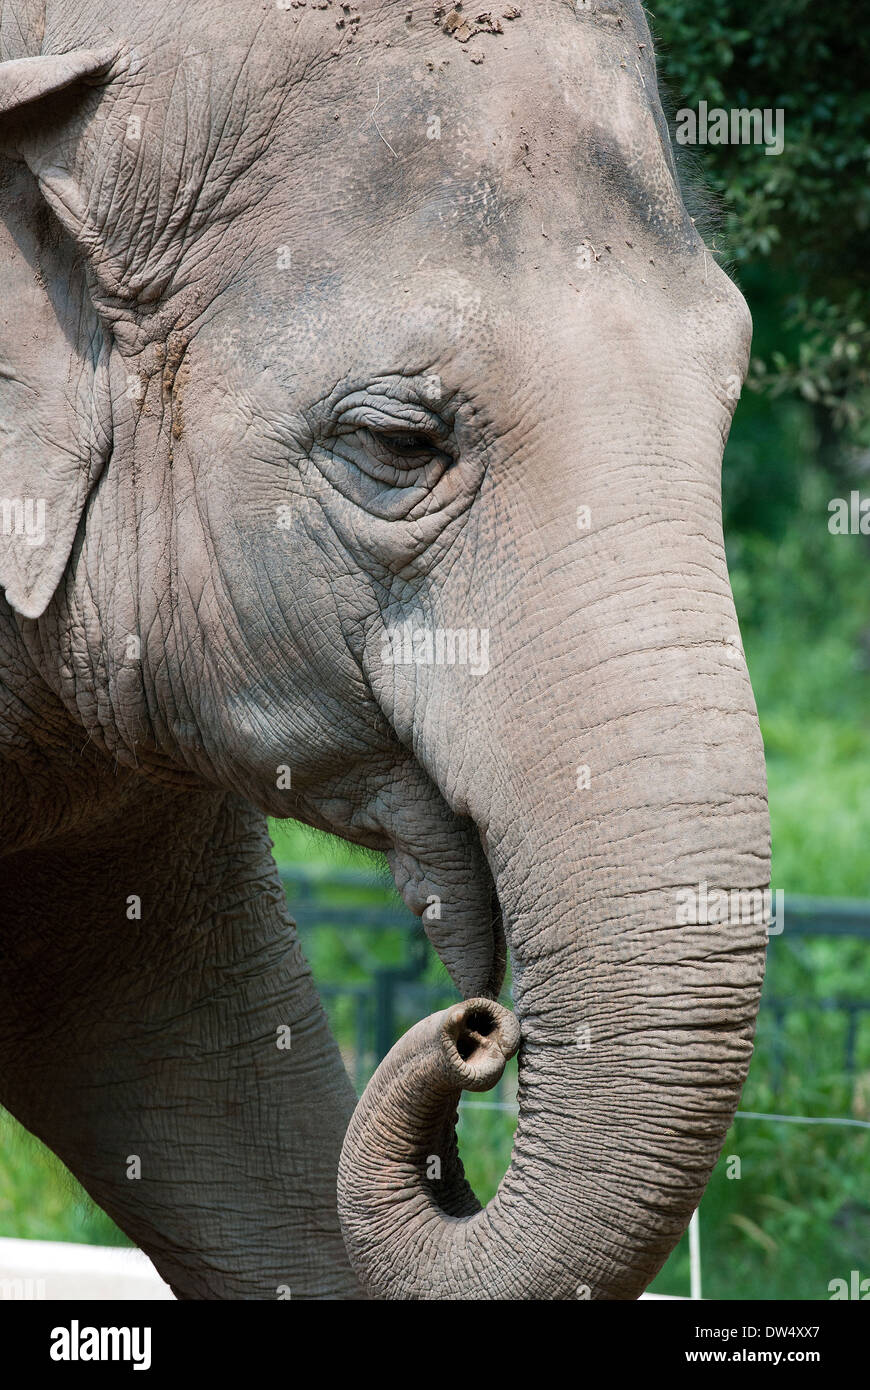 Asian elephant, Elephas maximus, Bioparco, Rome, Italy Stock Photo